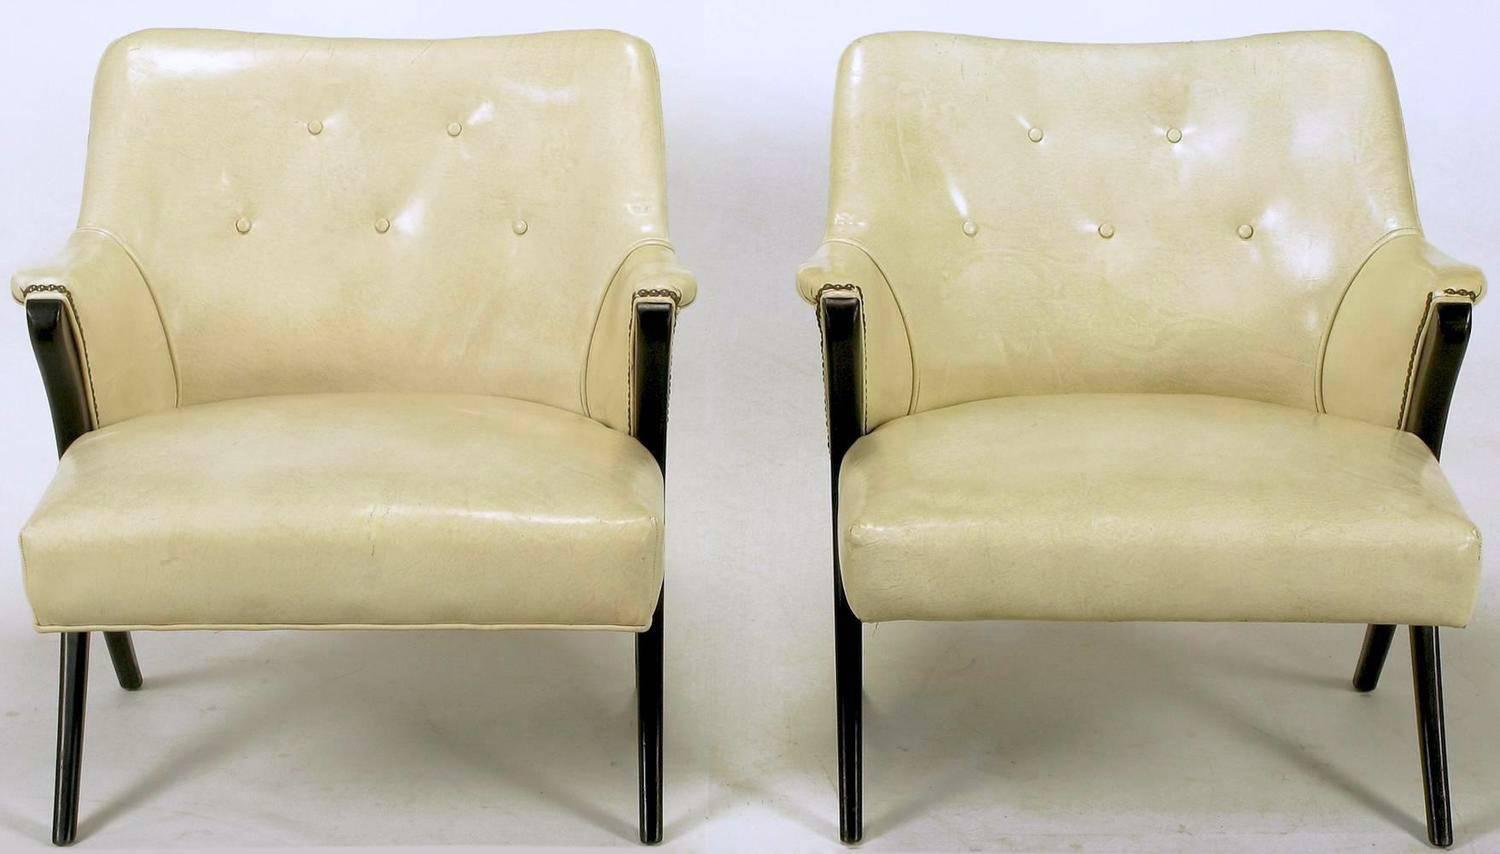 Zwei modernistische Clubsessel aus den 1940er Jahren mit originalem Lederbezug mit Knochenglasur. Armlehnen und Beine aus ebonisiertem Mahagoni in markanter Y-Form. Nagelkopf-Akzente aus Messing. Ein Stuhl hat eine Bodeneinfassung, ein anderer